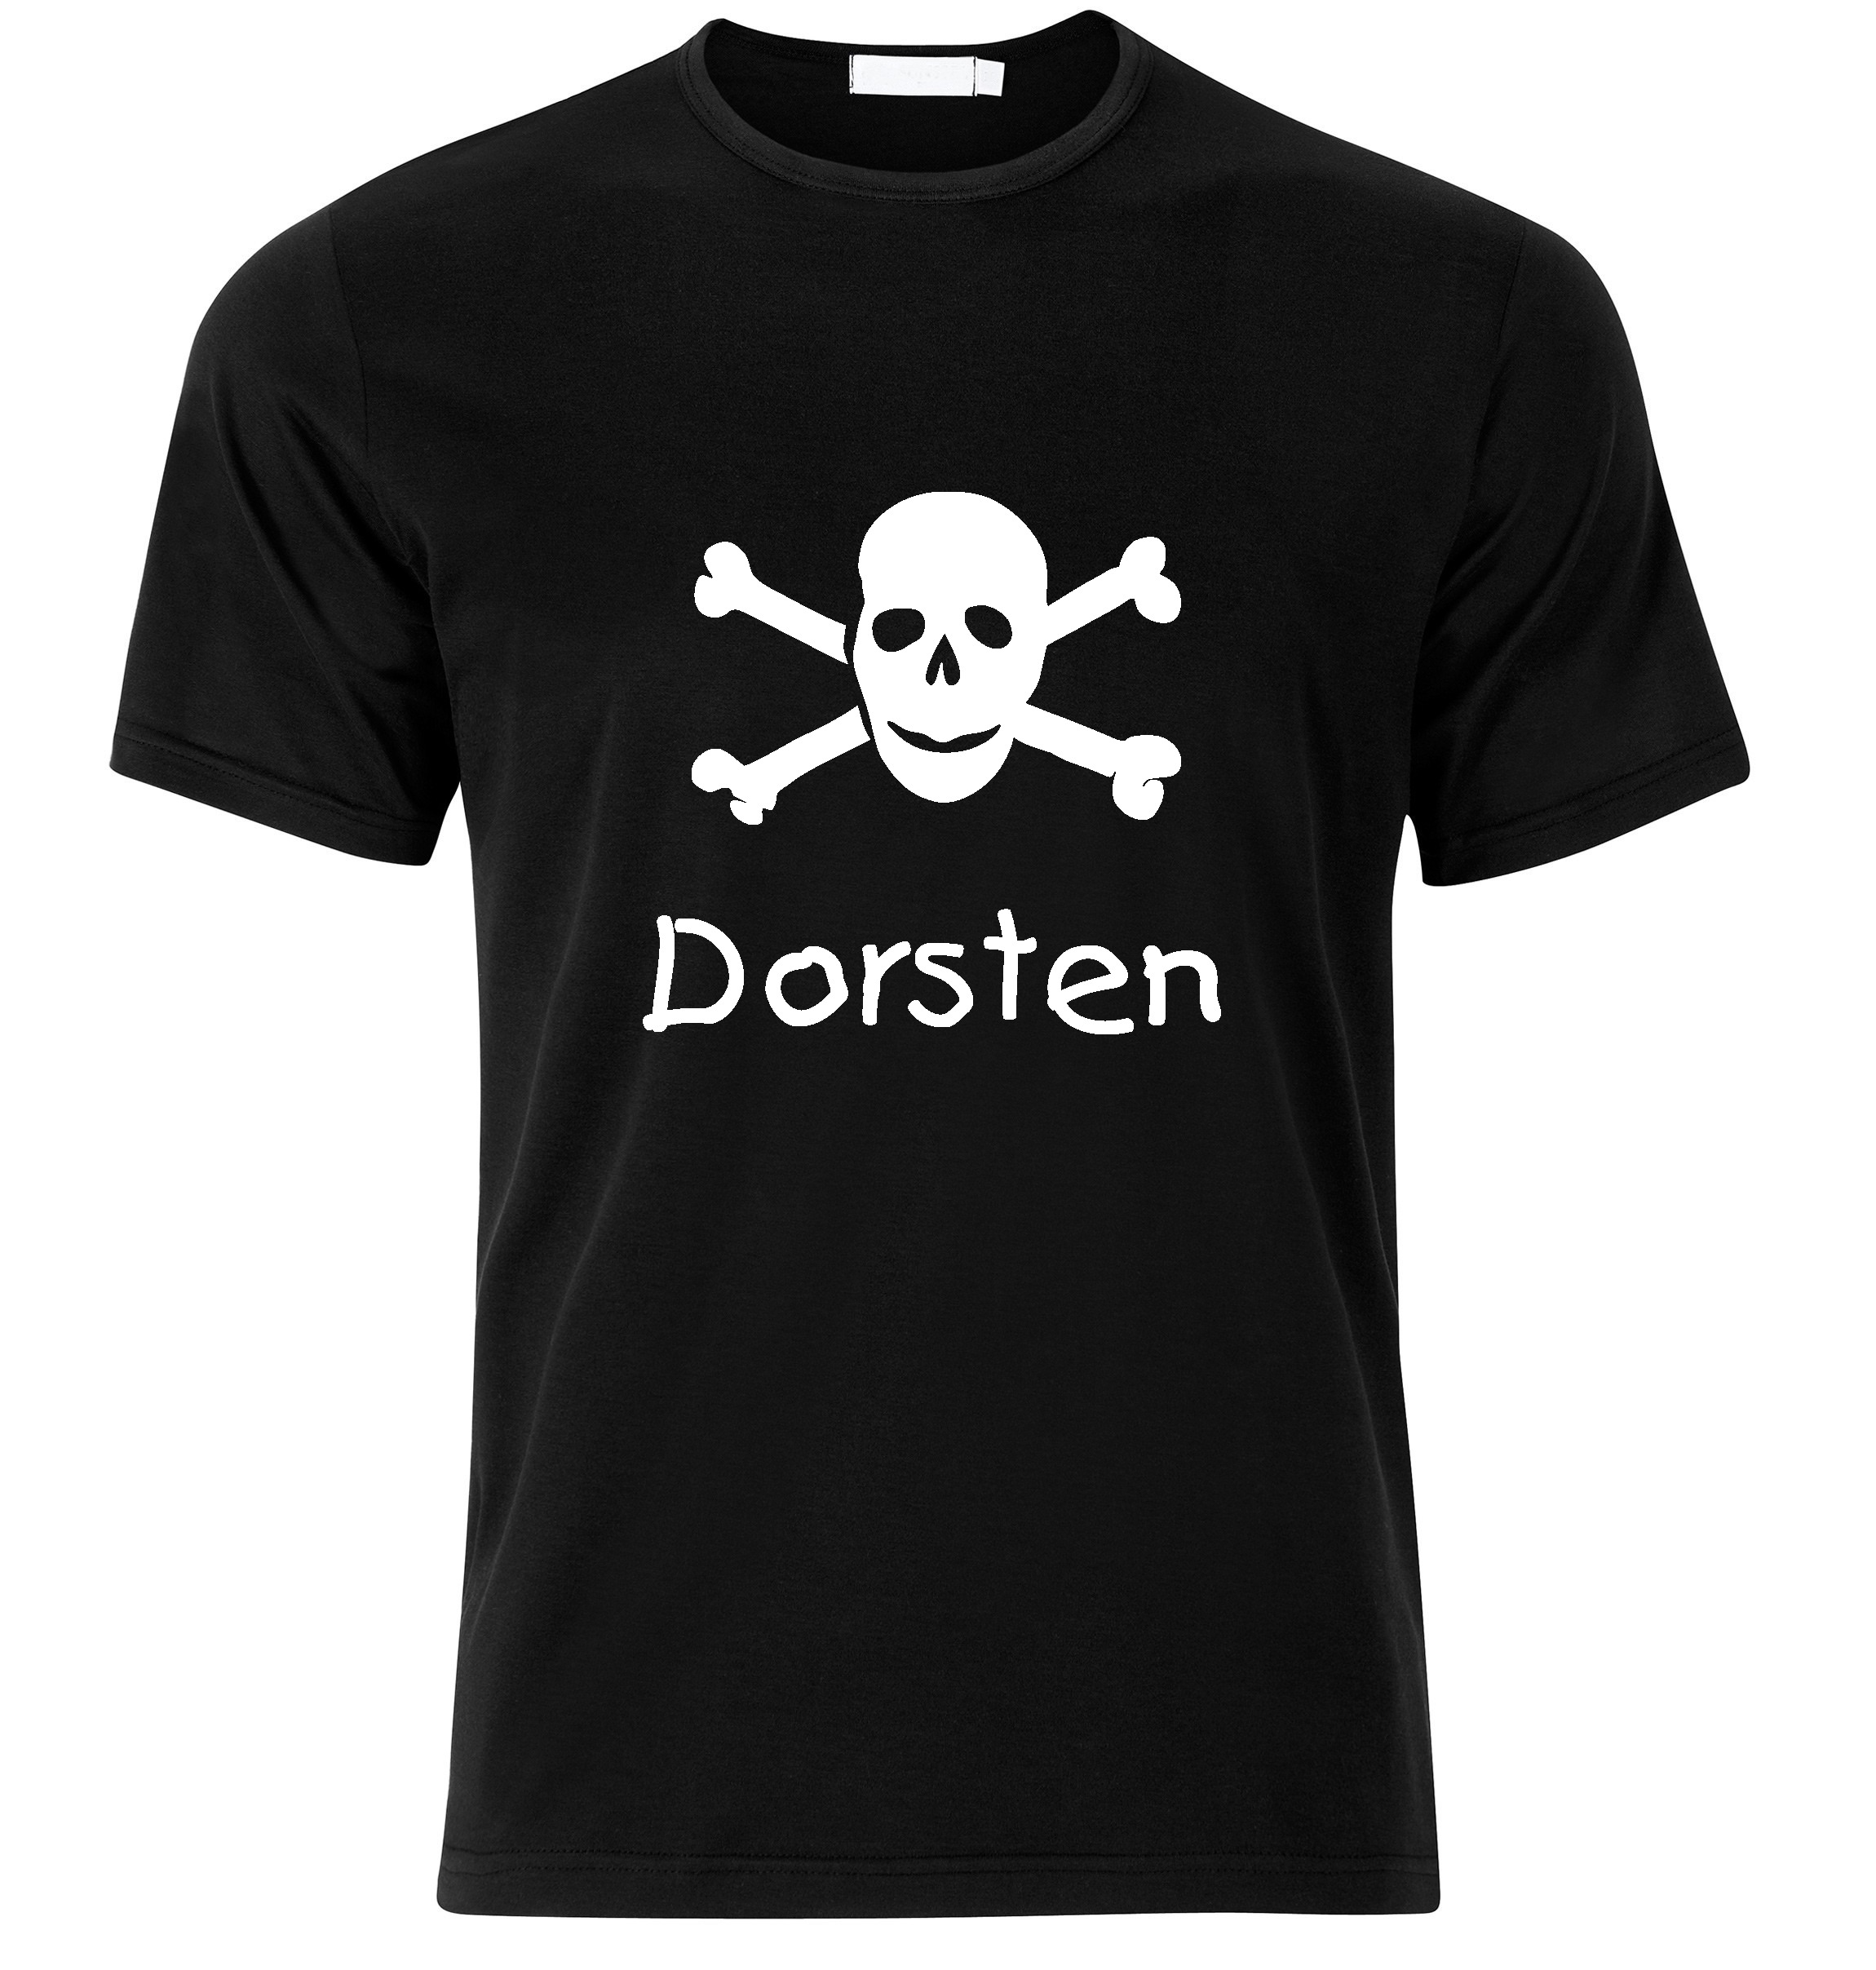 T-Shirt Dorsten Jolly Roger, Totenkopf